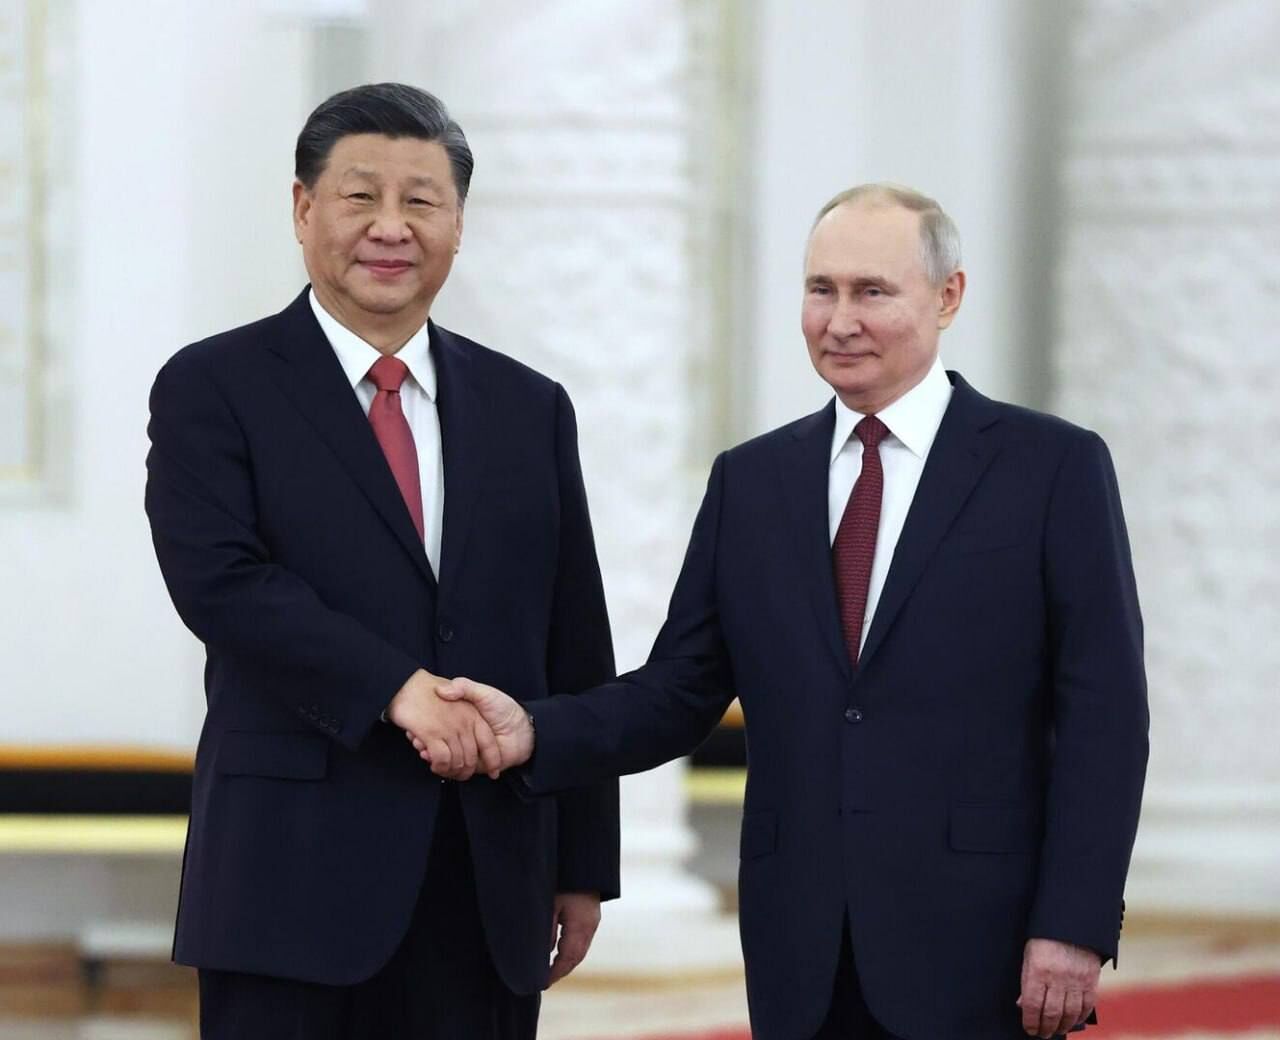 中国主席习近平致电祝贺普京当选连任俄罗斯总统